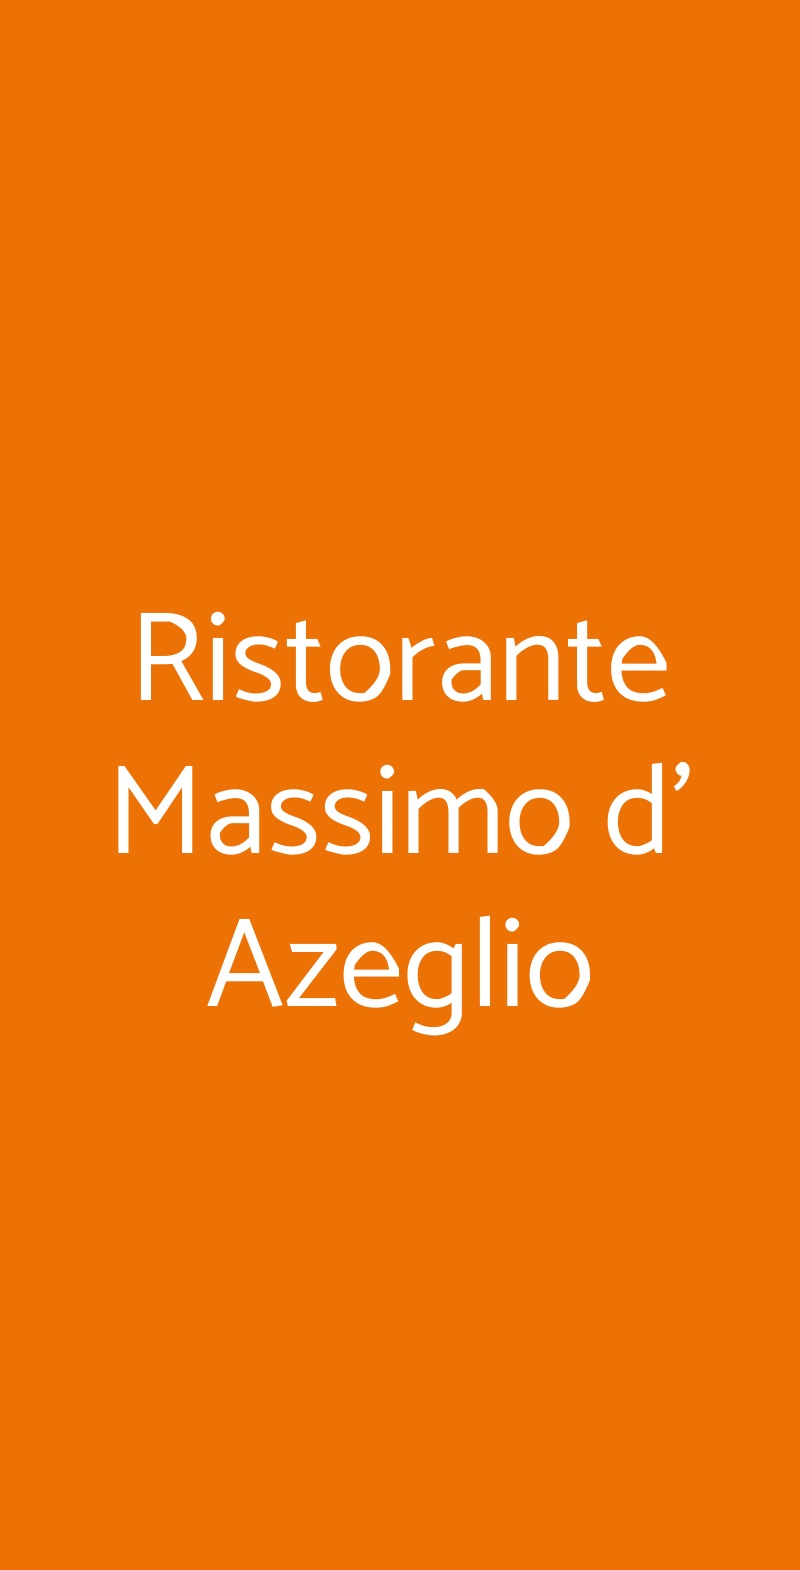 Ristorante Massimo d' Azeglio Roma menù 1 pagina